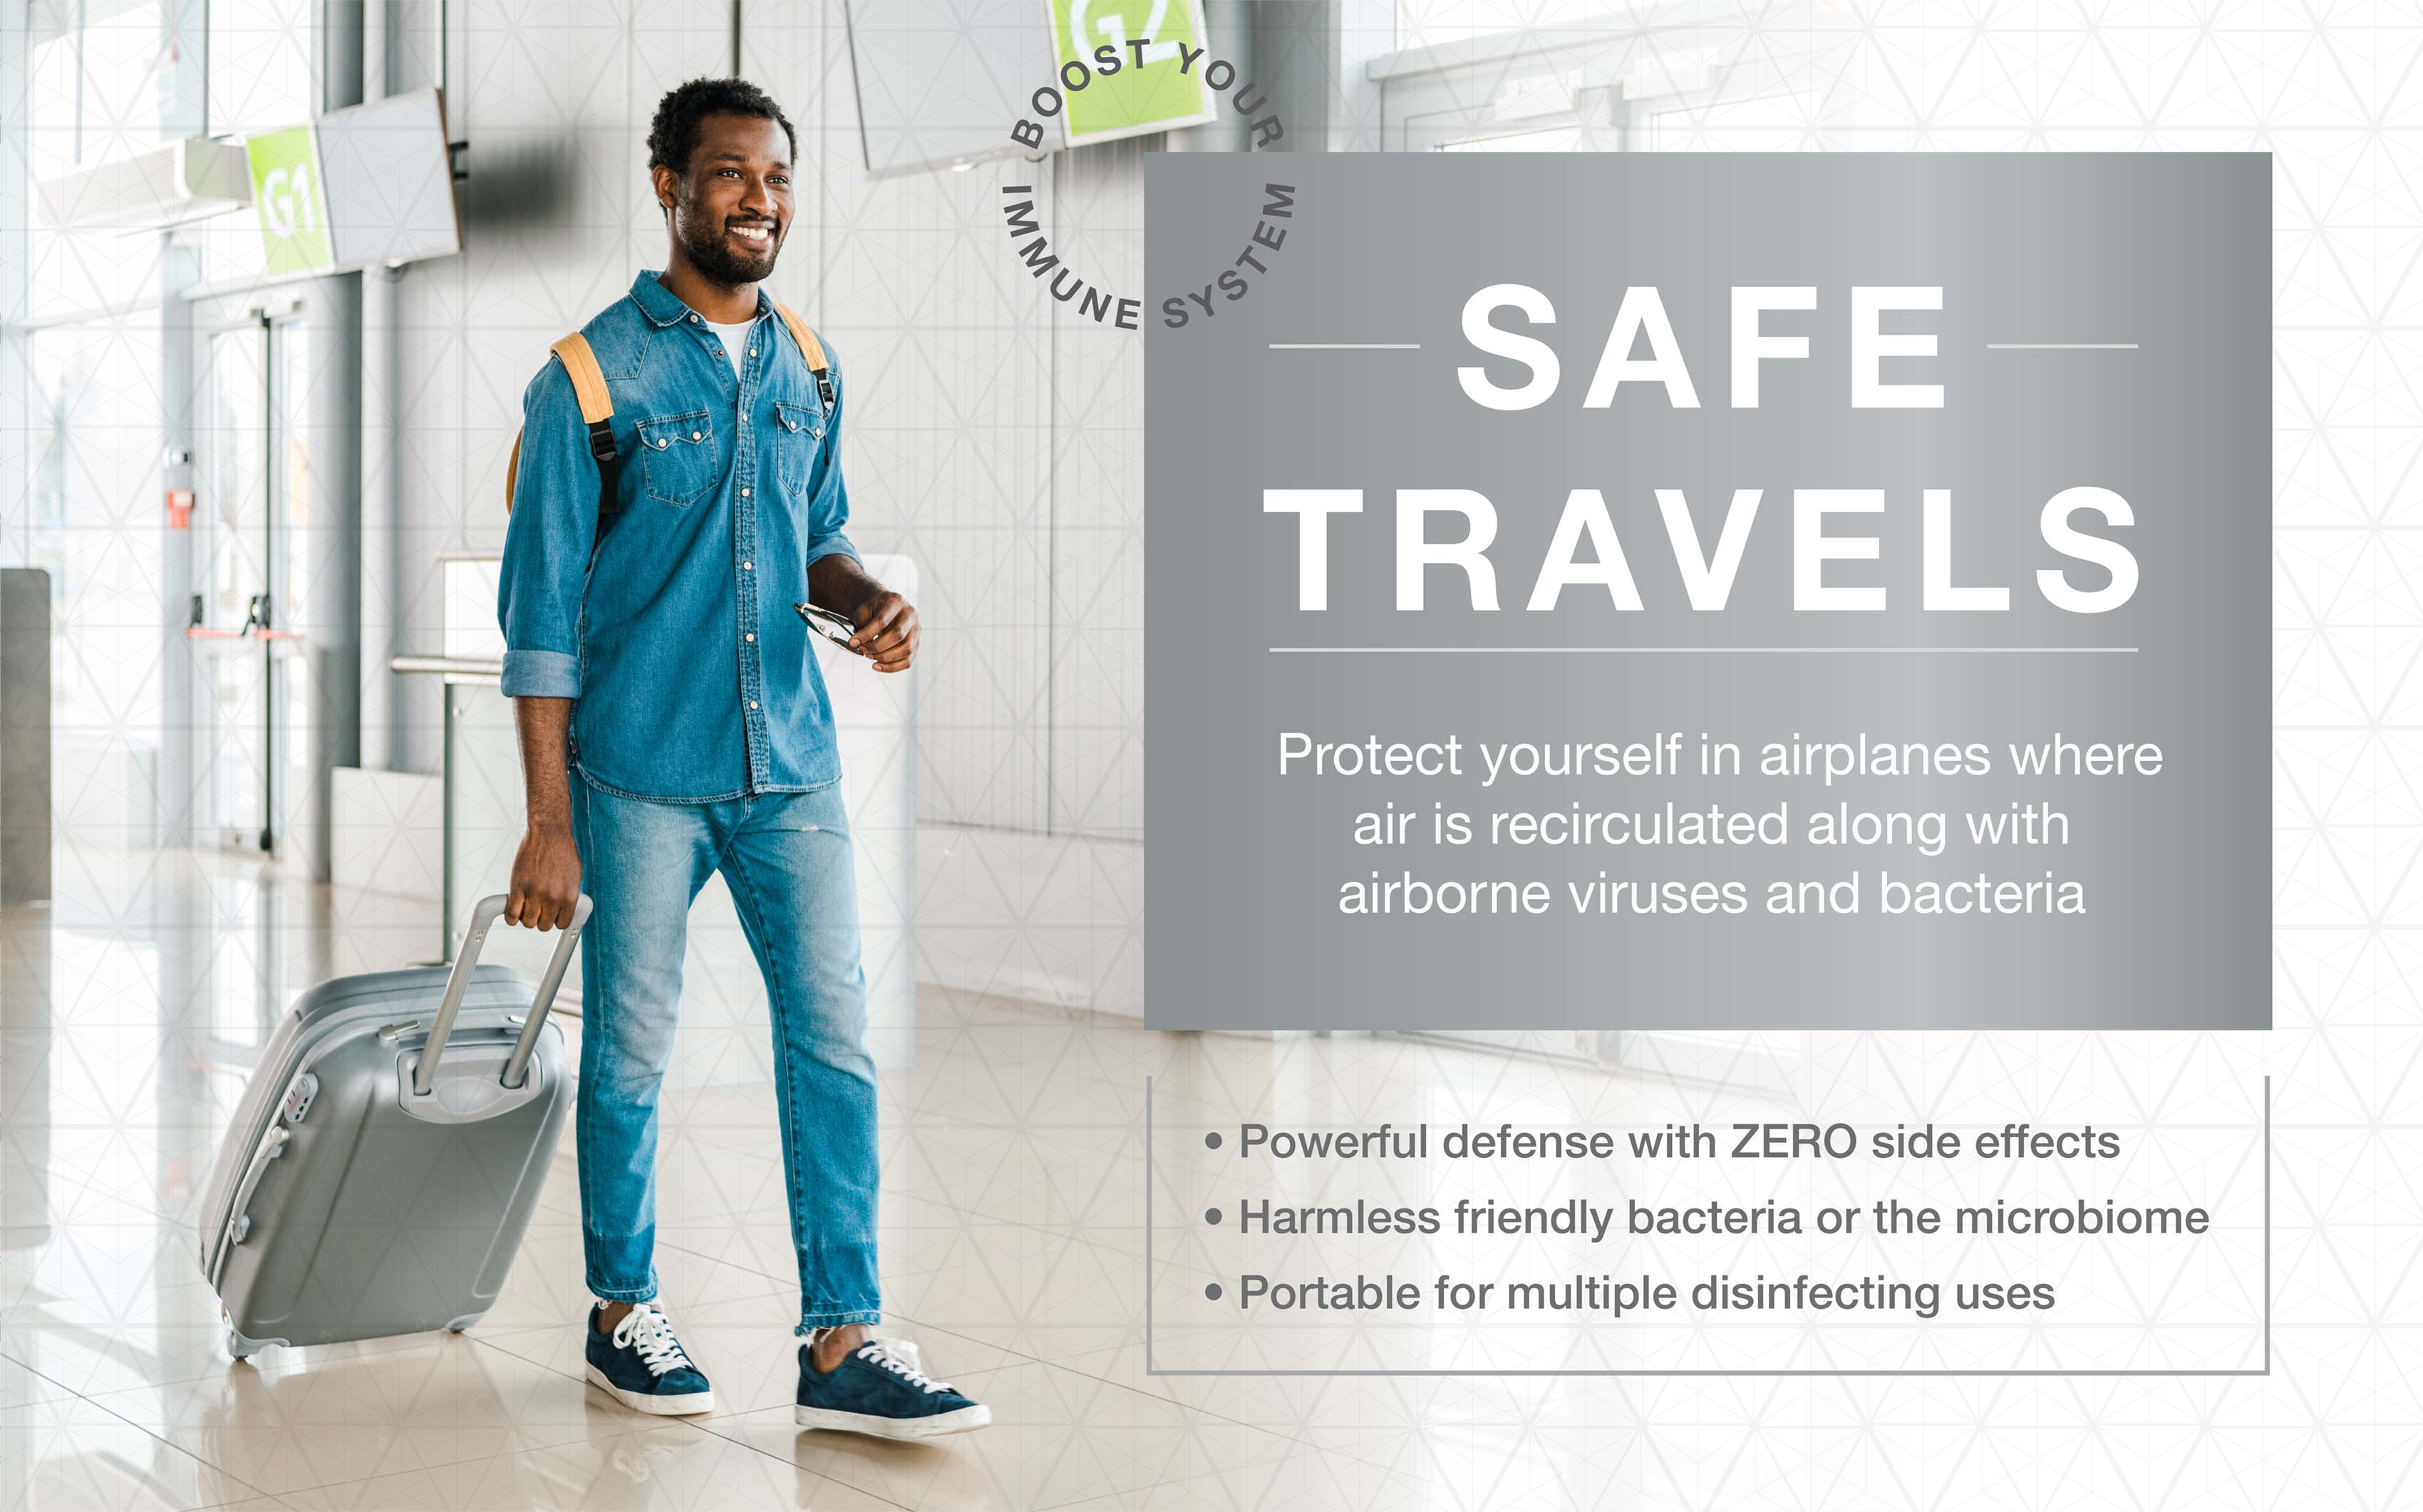 Protéjase en aviones donde el aire recircula junto con virus y bacterias transportados por el aire.